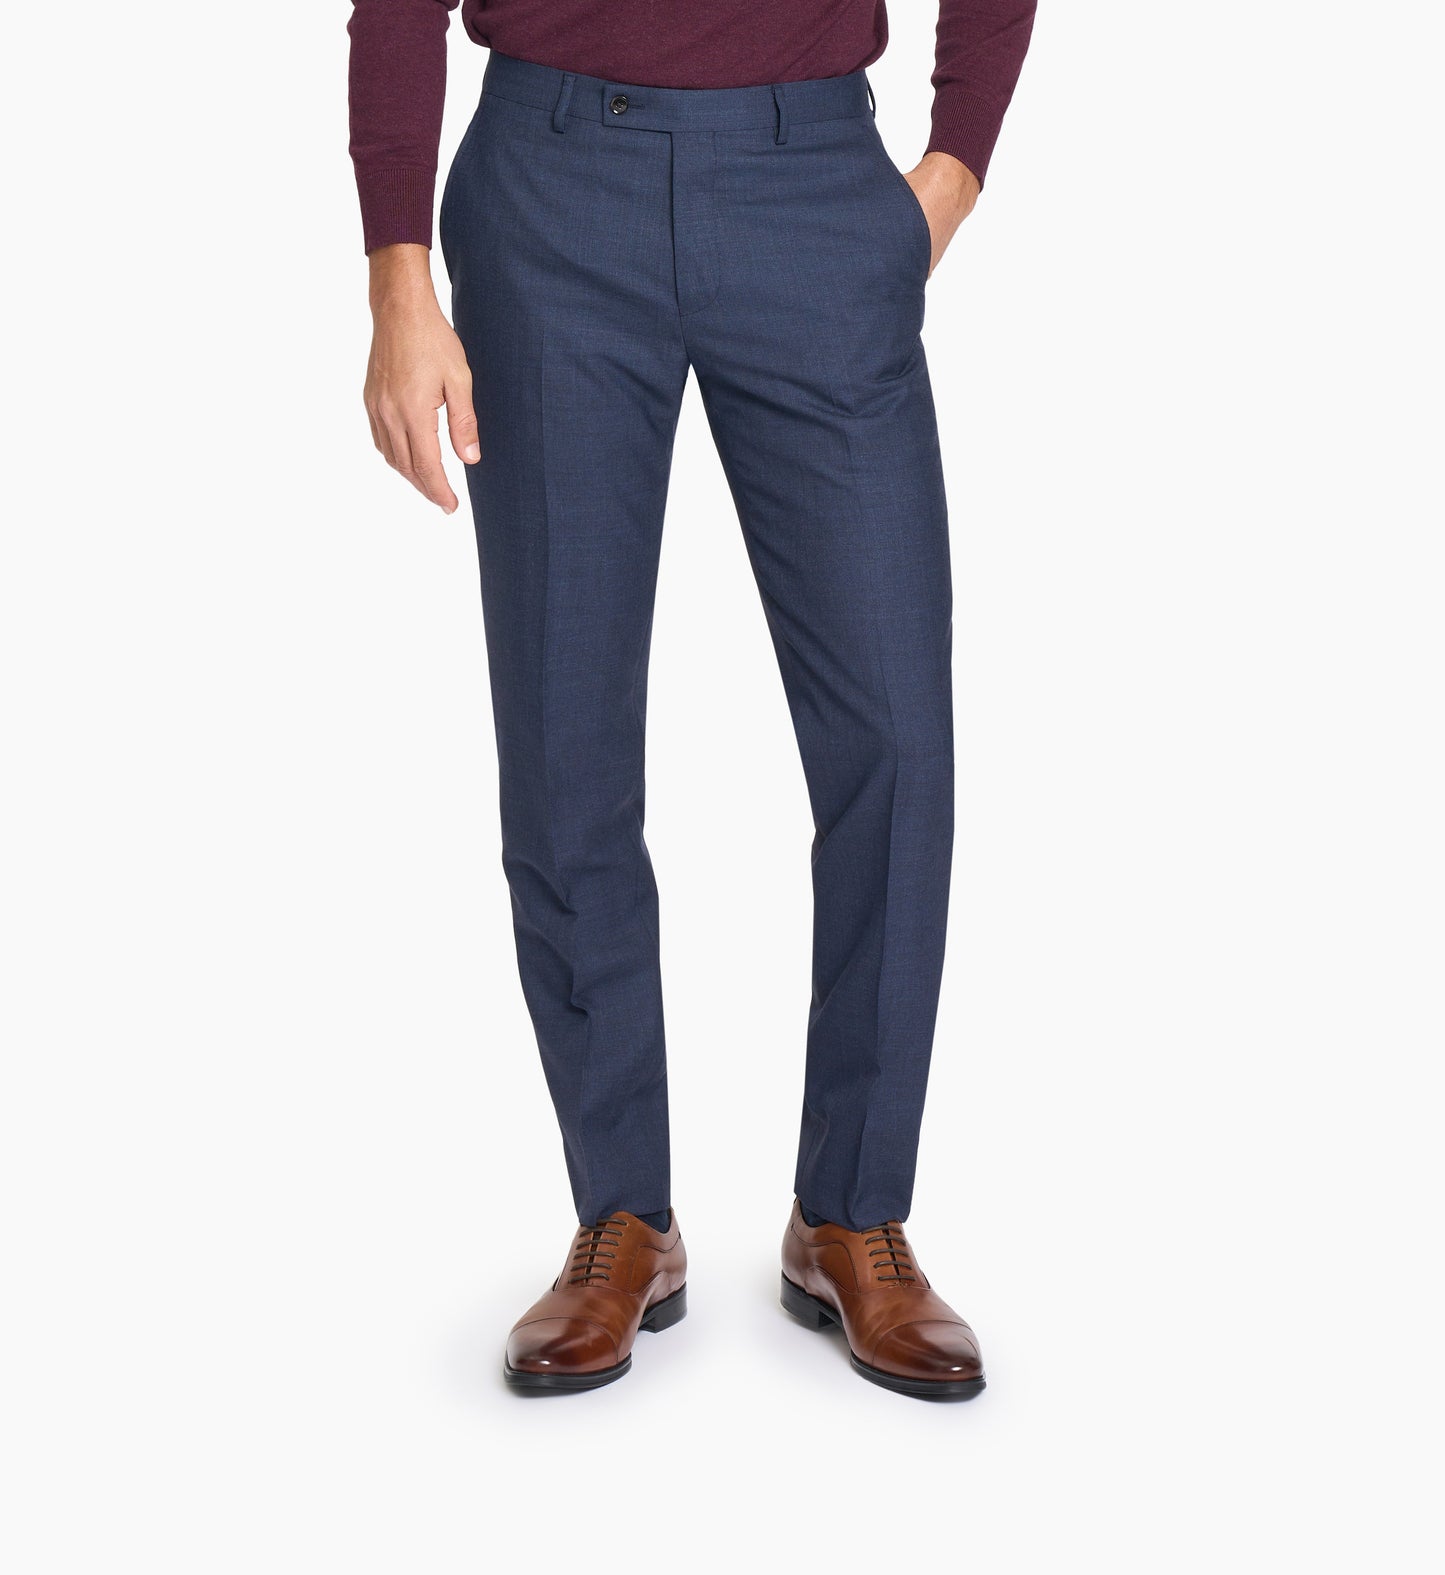 Navy Blue Plain Weave Custom Trouser